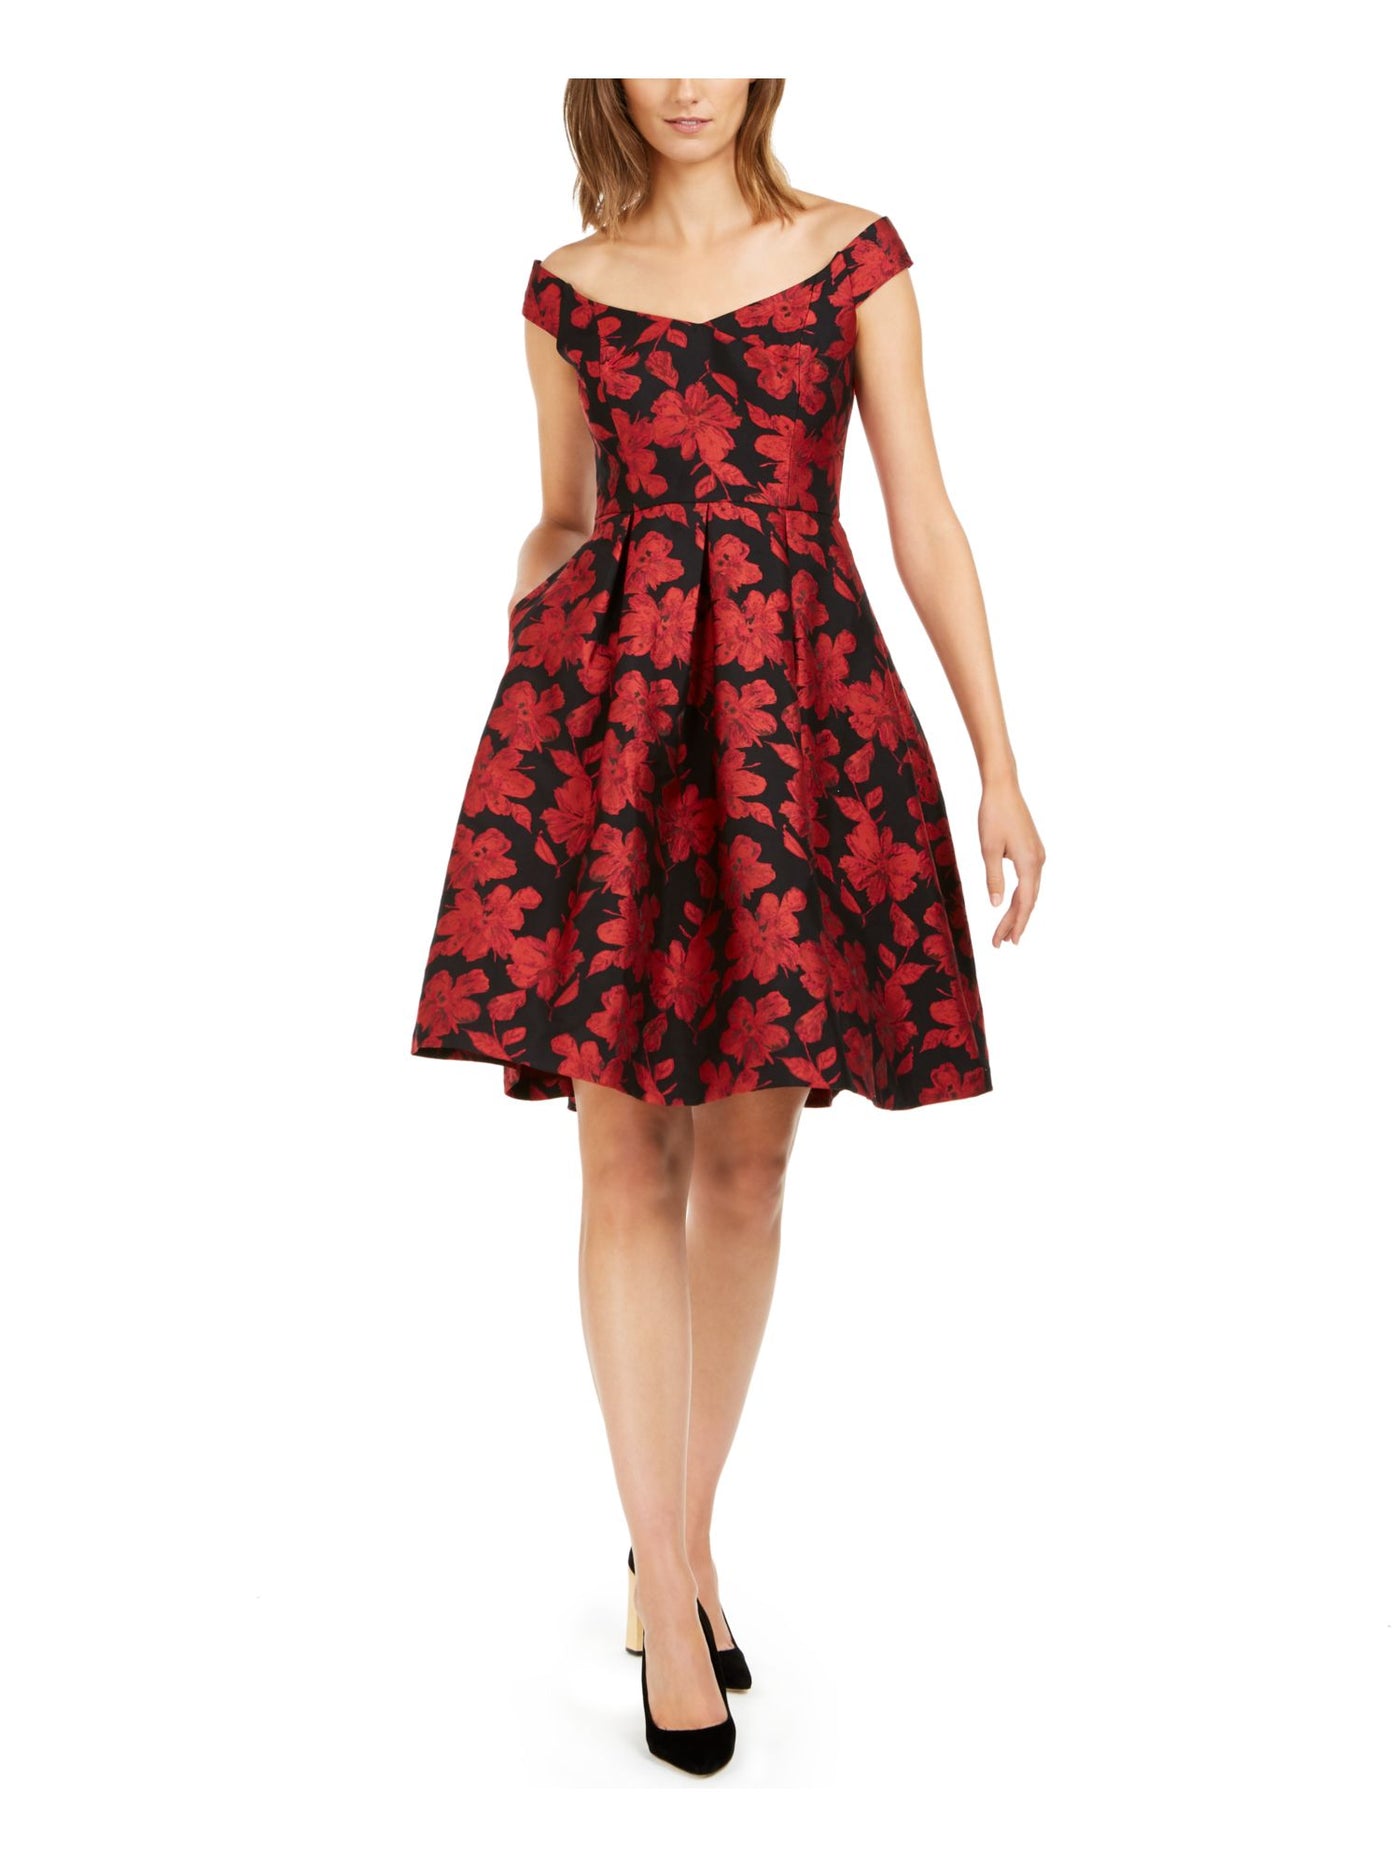 CALVIN KLEIN Womens Red Embellished Floral Short Sleeve Off Shoulder Below The Knee Evening Sheath Dress 4